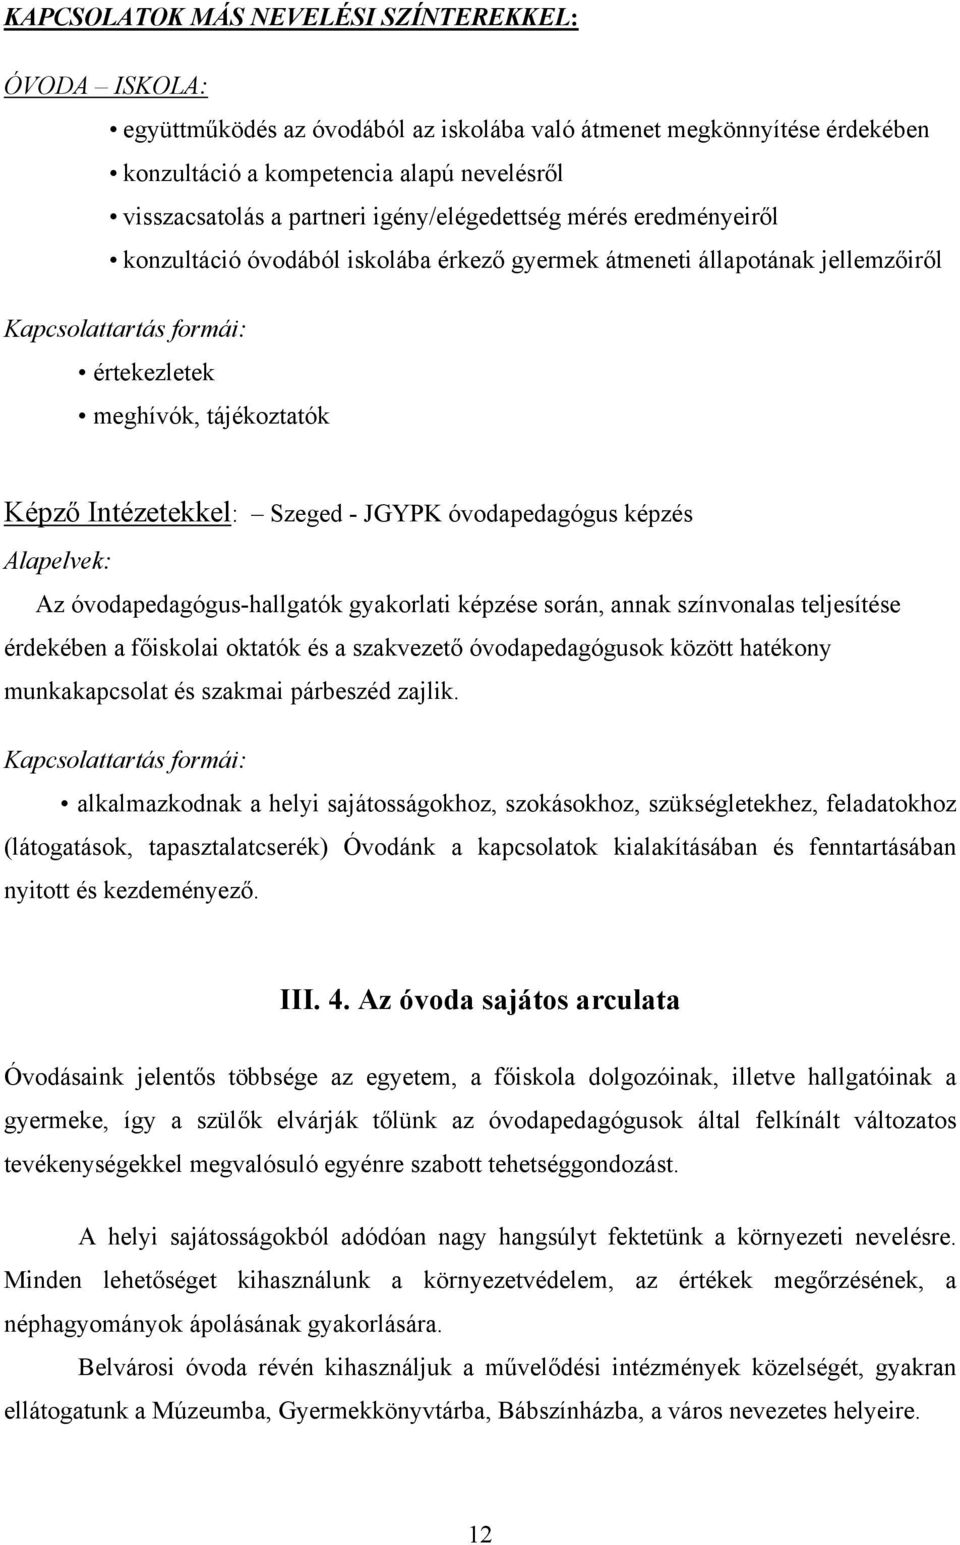 Szeged - JGYPK óvodapedagógus képzés Alapelvek: Az óvodapedagógus-hallgatók gyakorlati képzése során, annak színvonalas teljesítése érdekében a főiskolai oktatók és a szakvezető óvodapedagógusok